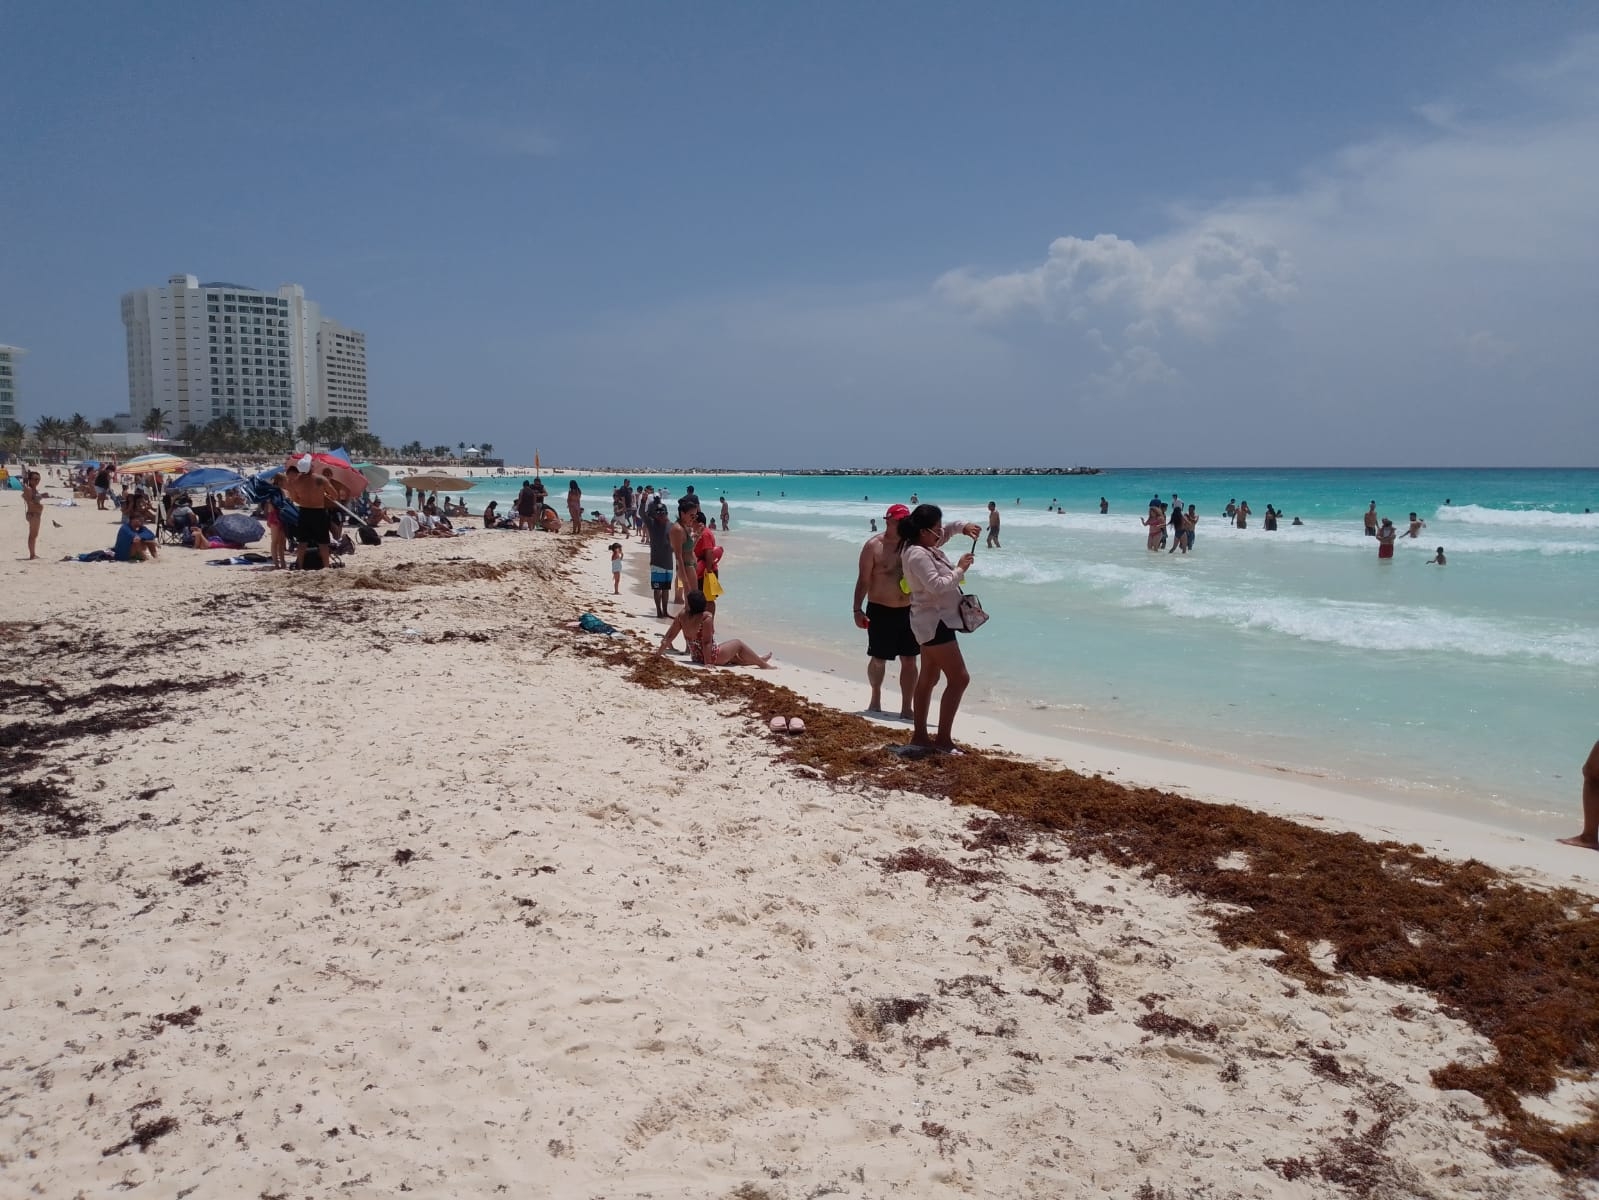 Playa Fórum se localiza cerca de Punta Cancún, en la zona hotelera, donde se puede admirar el faro que existe en el sitio